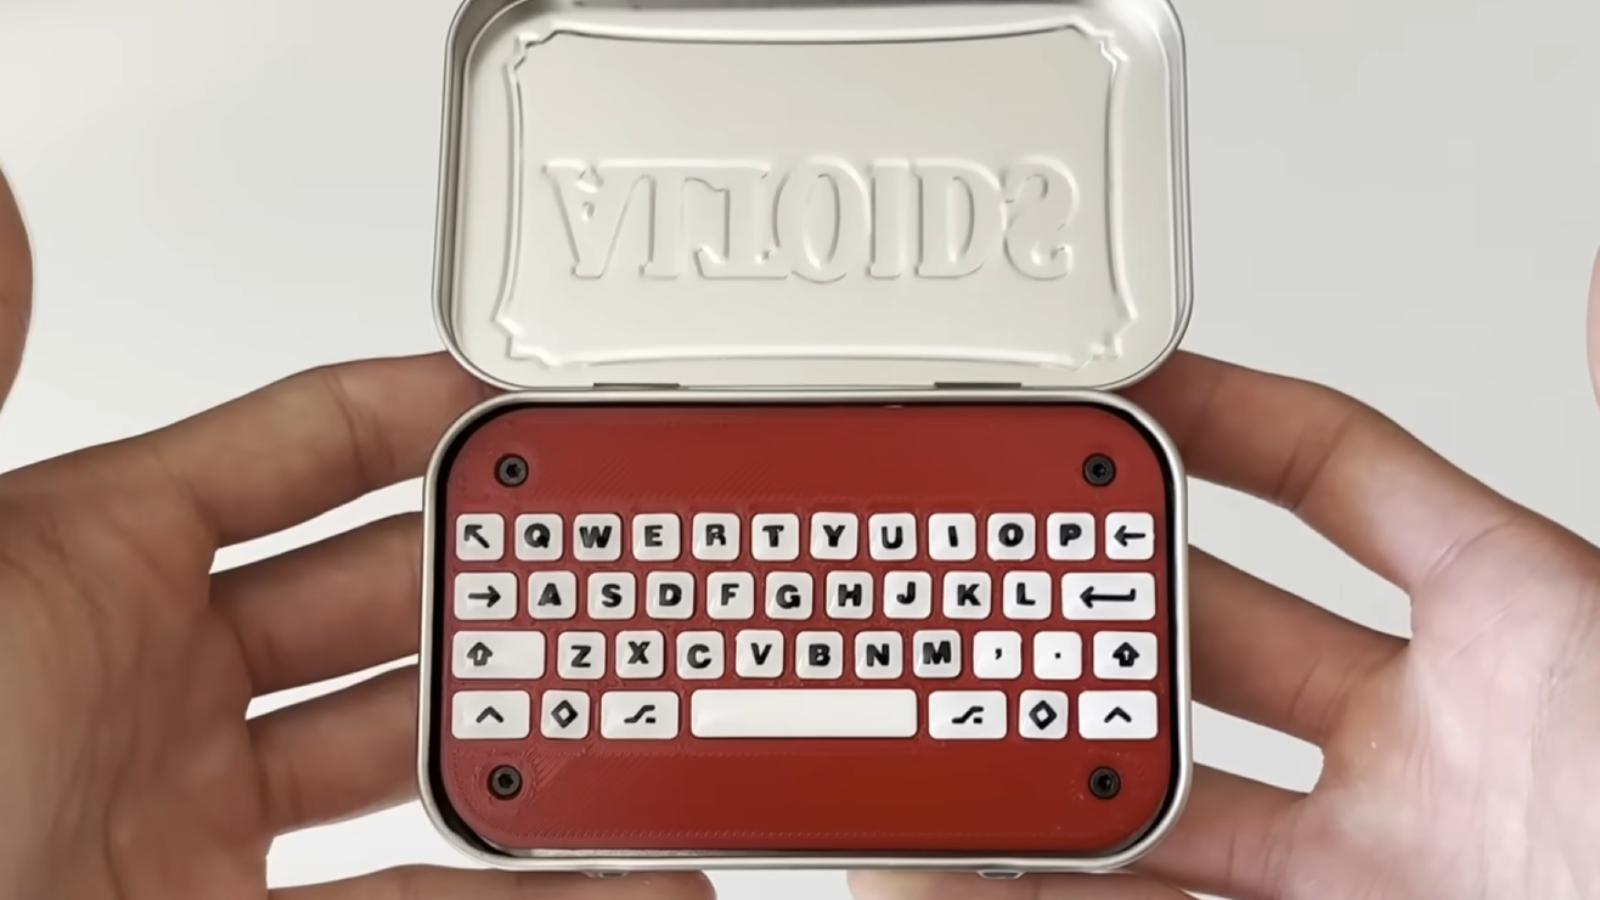 Altoids Tin keyboard on a white background